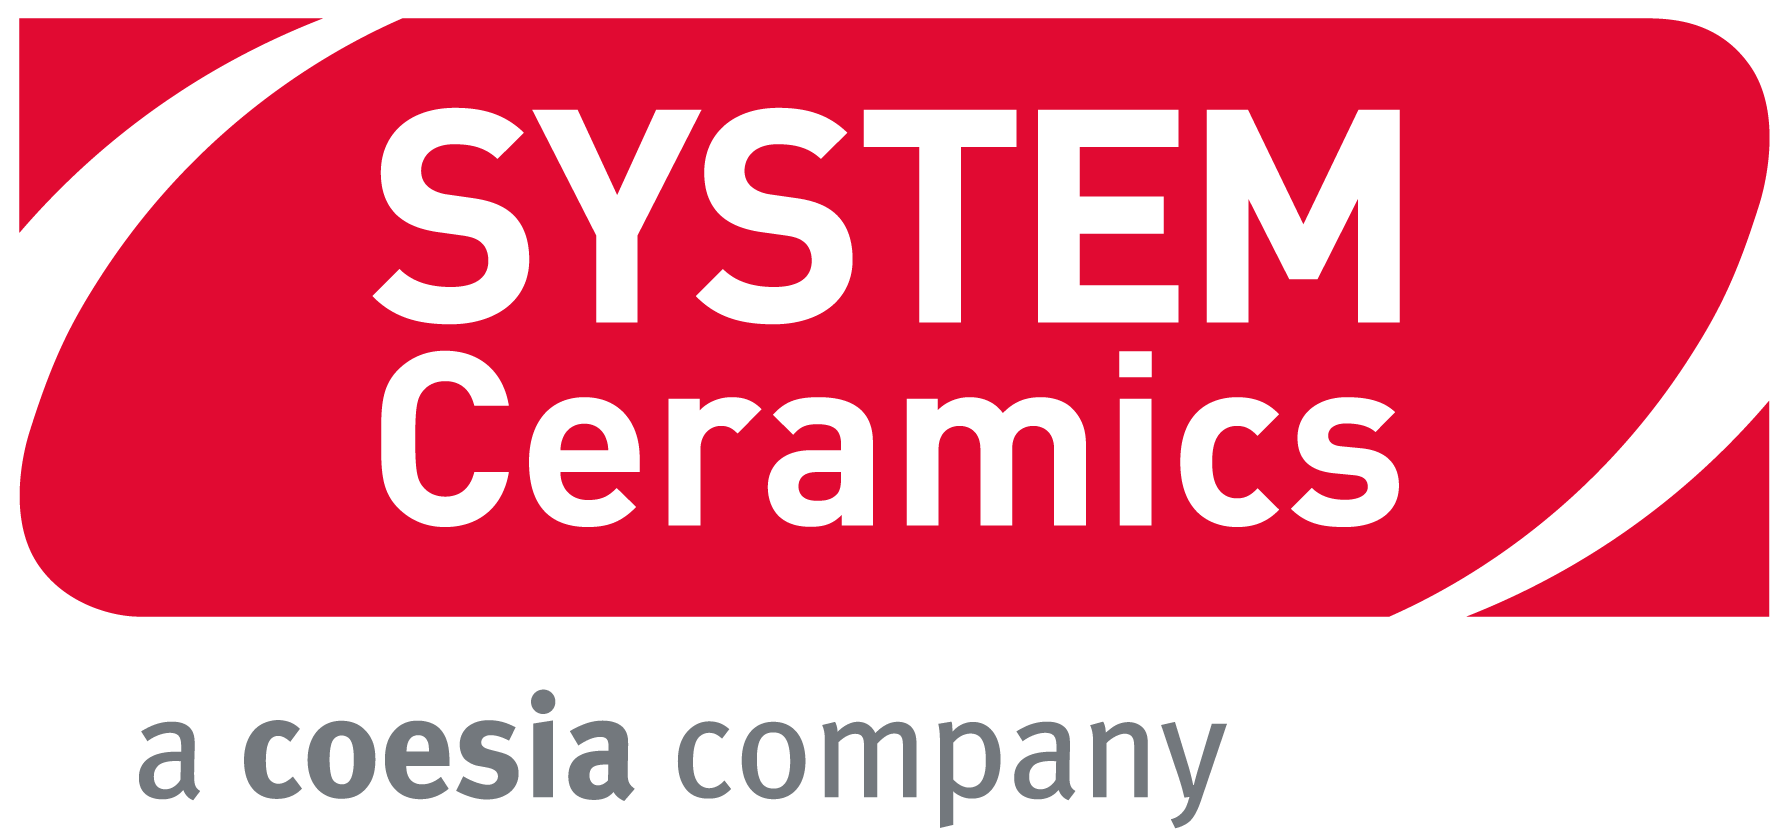 1_1_1_SYSTEM_CERAMICS